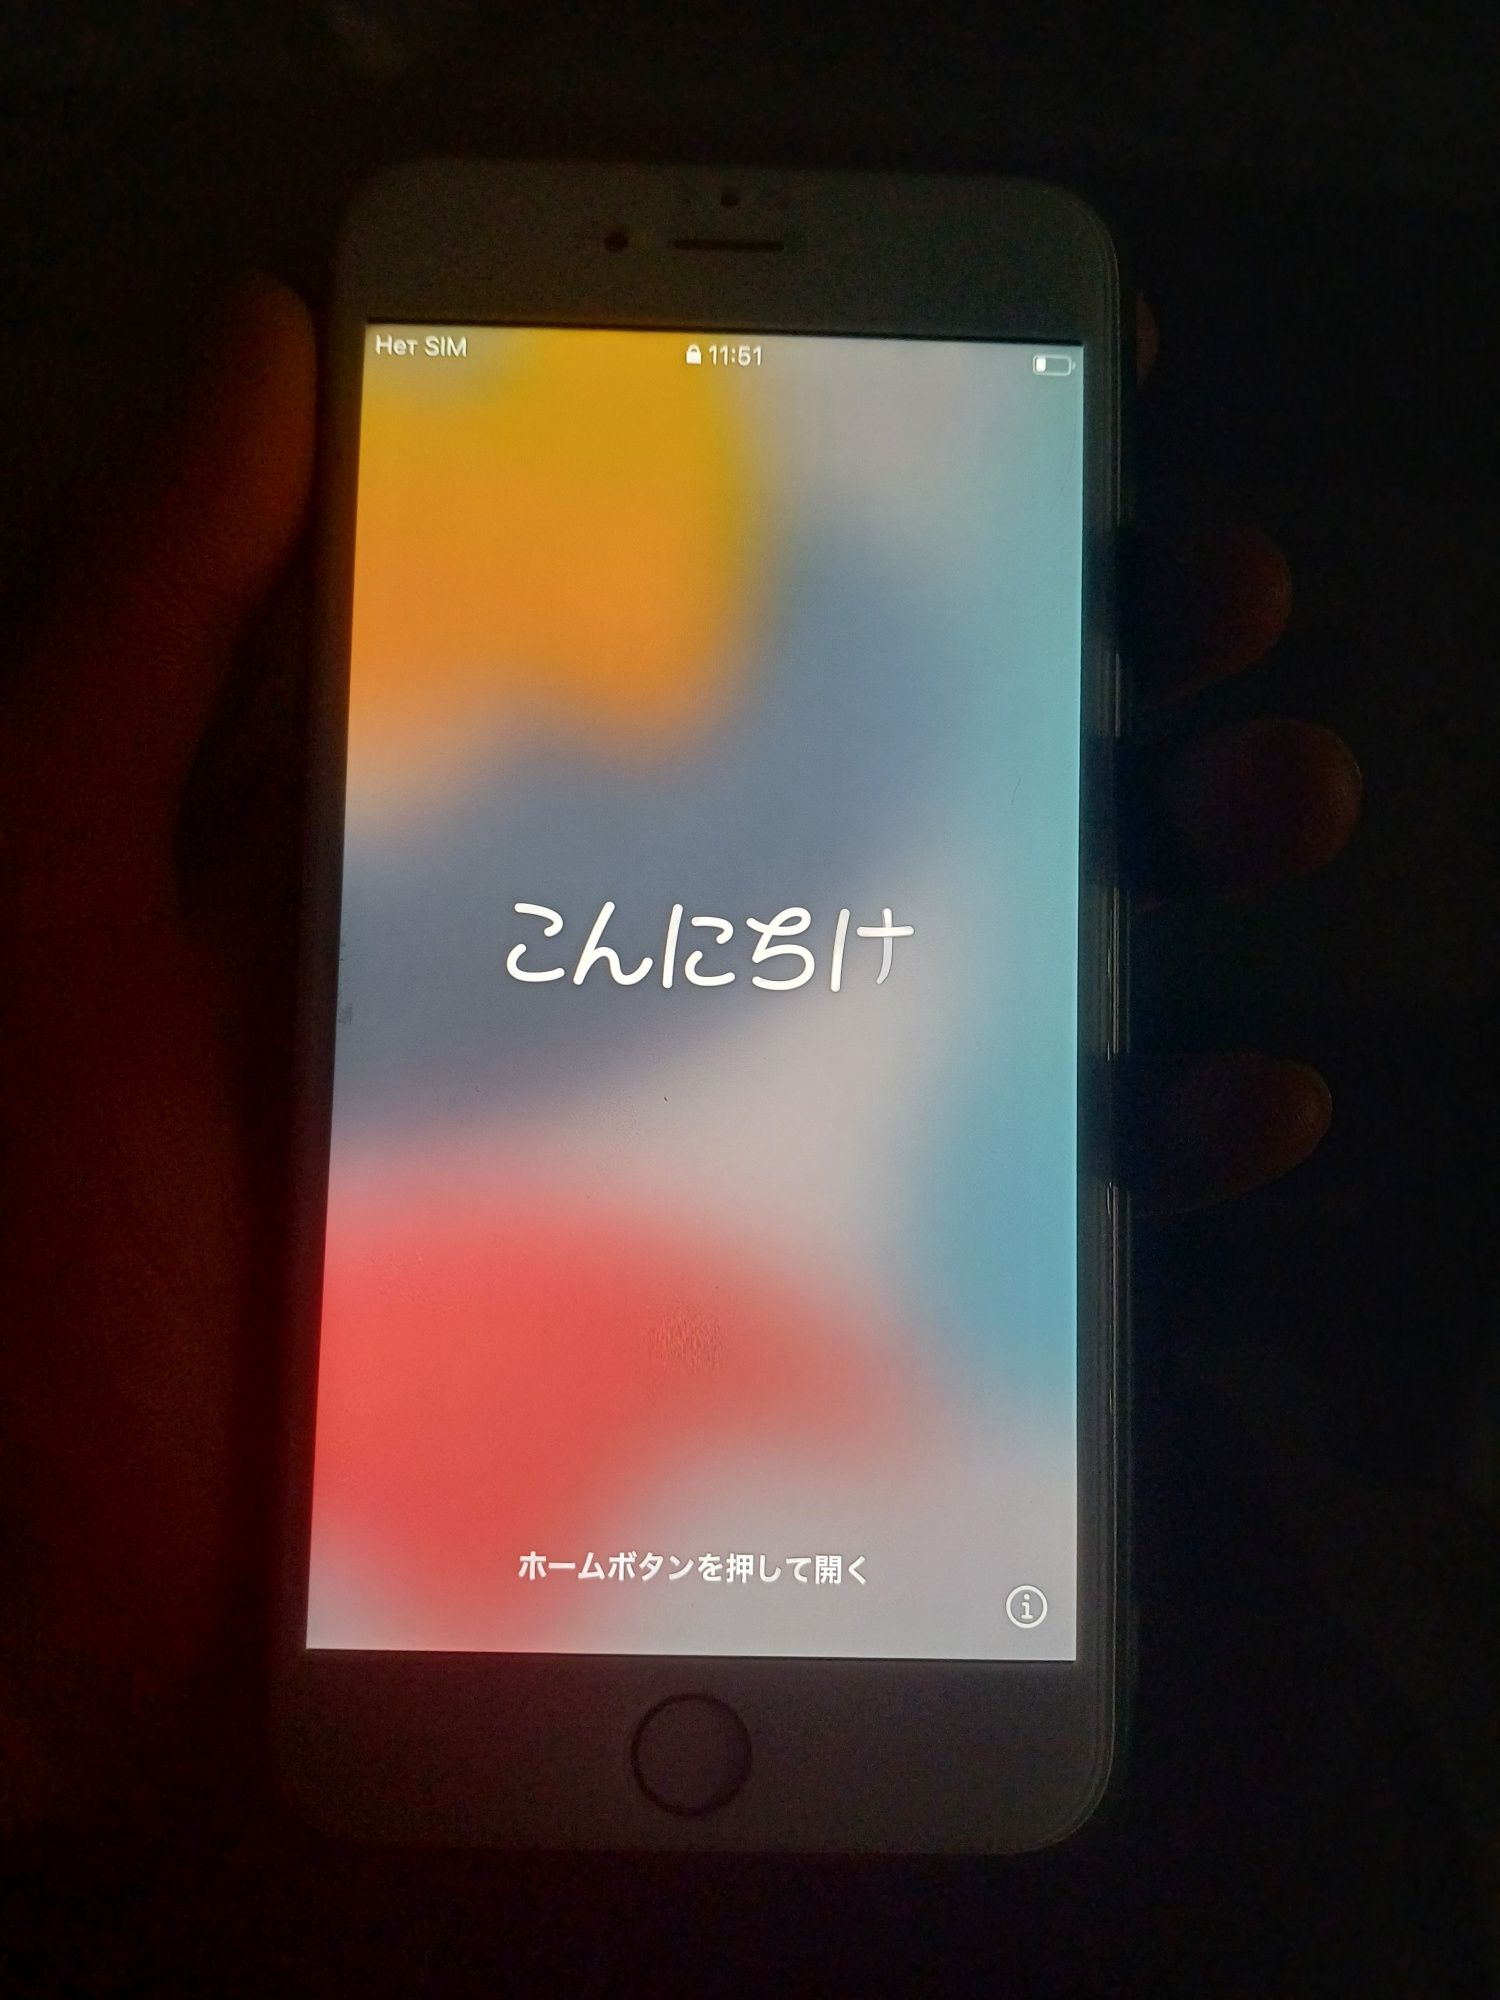 iPhone 6+ новый обмен мопед